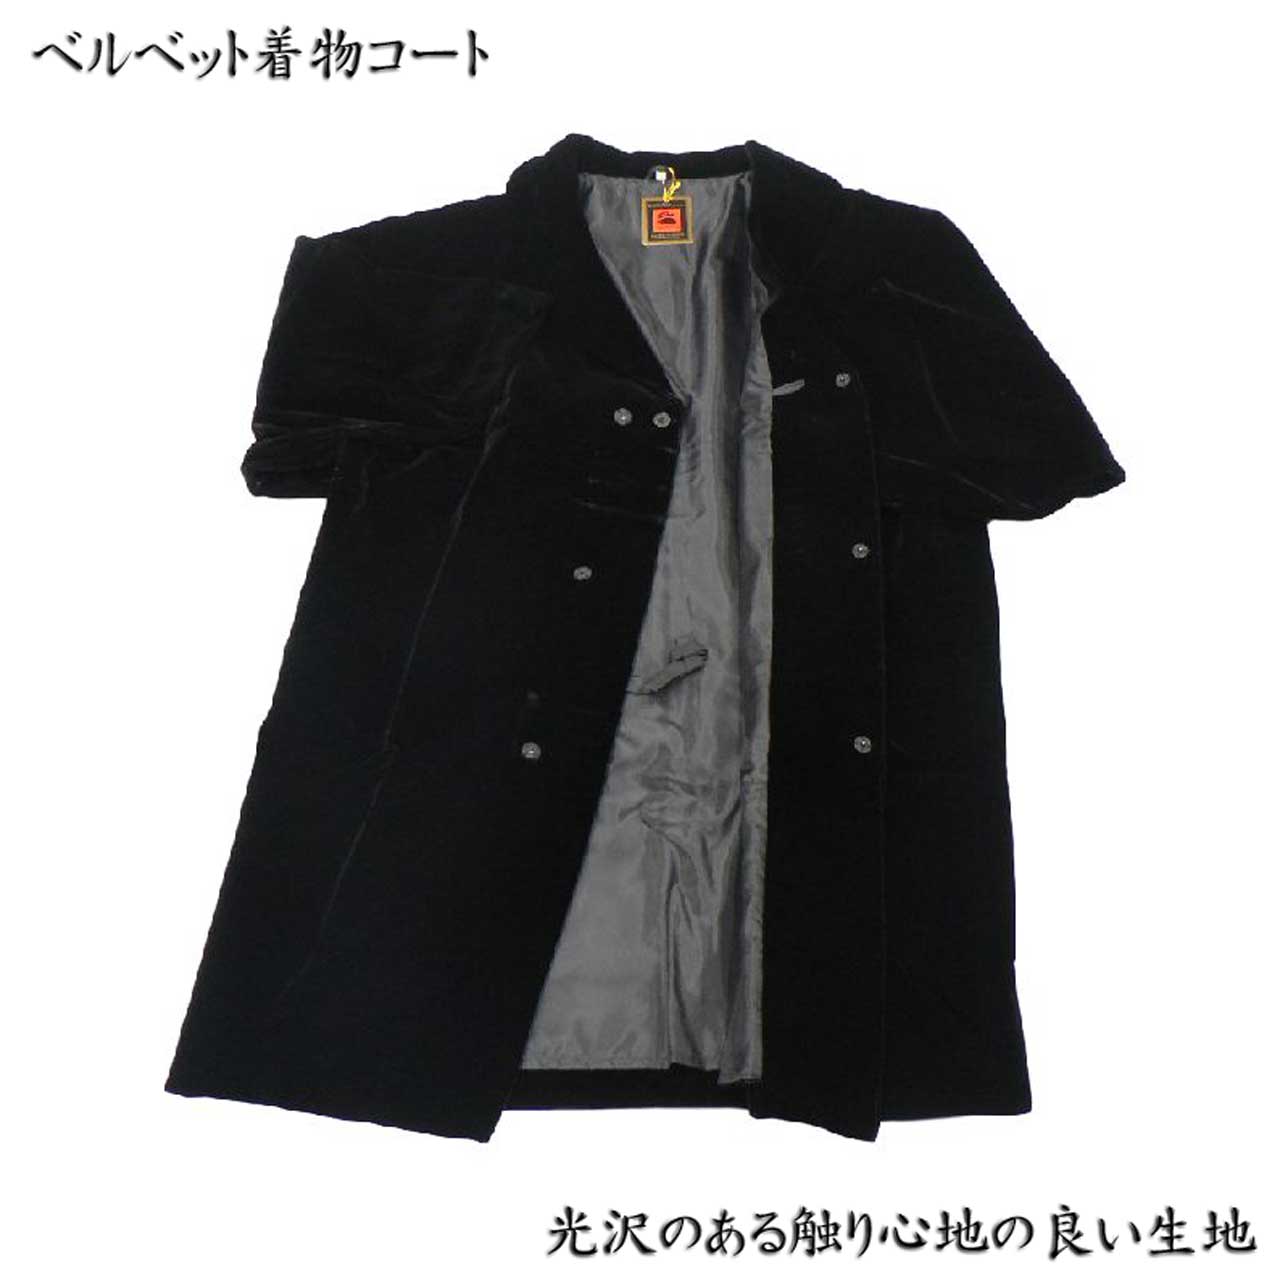 着物コート・和装コート・着物・和服用・冬用・ベルベット、黒、M